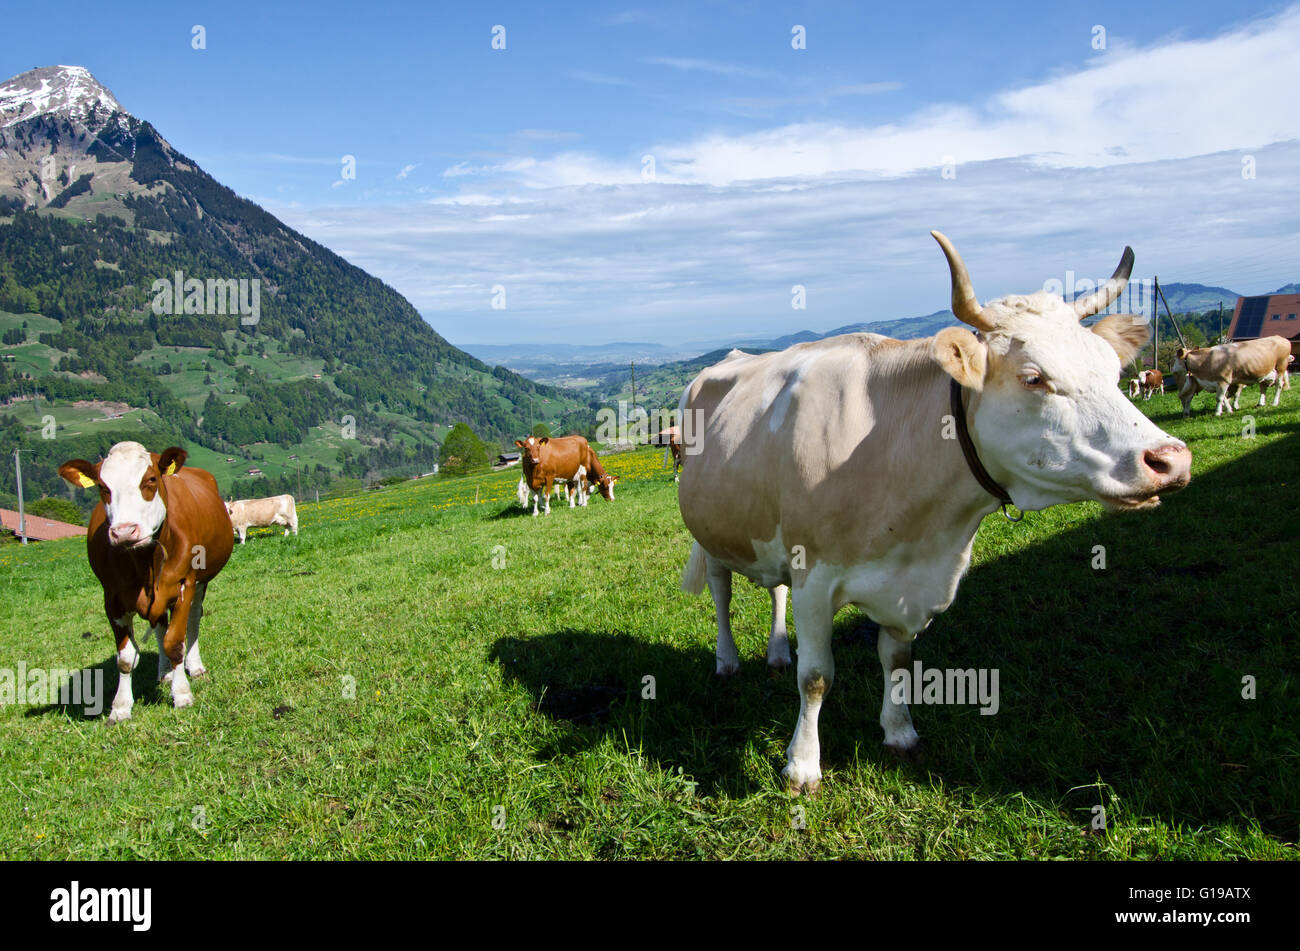 Les vaches avec et sans cornes pâturage sur Pré, Scharnachtal, vallée de la Kander, Alpes Bernoises, Suisse Banque D'Images